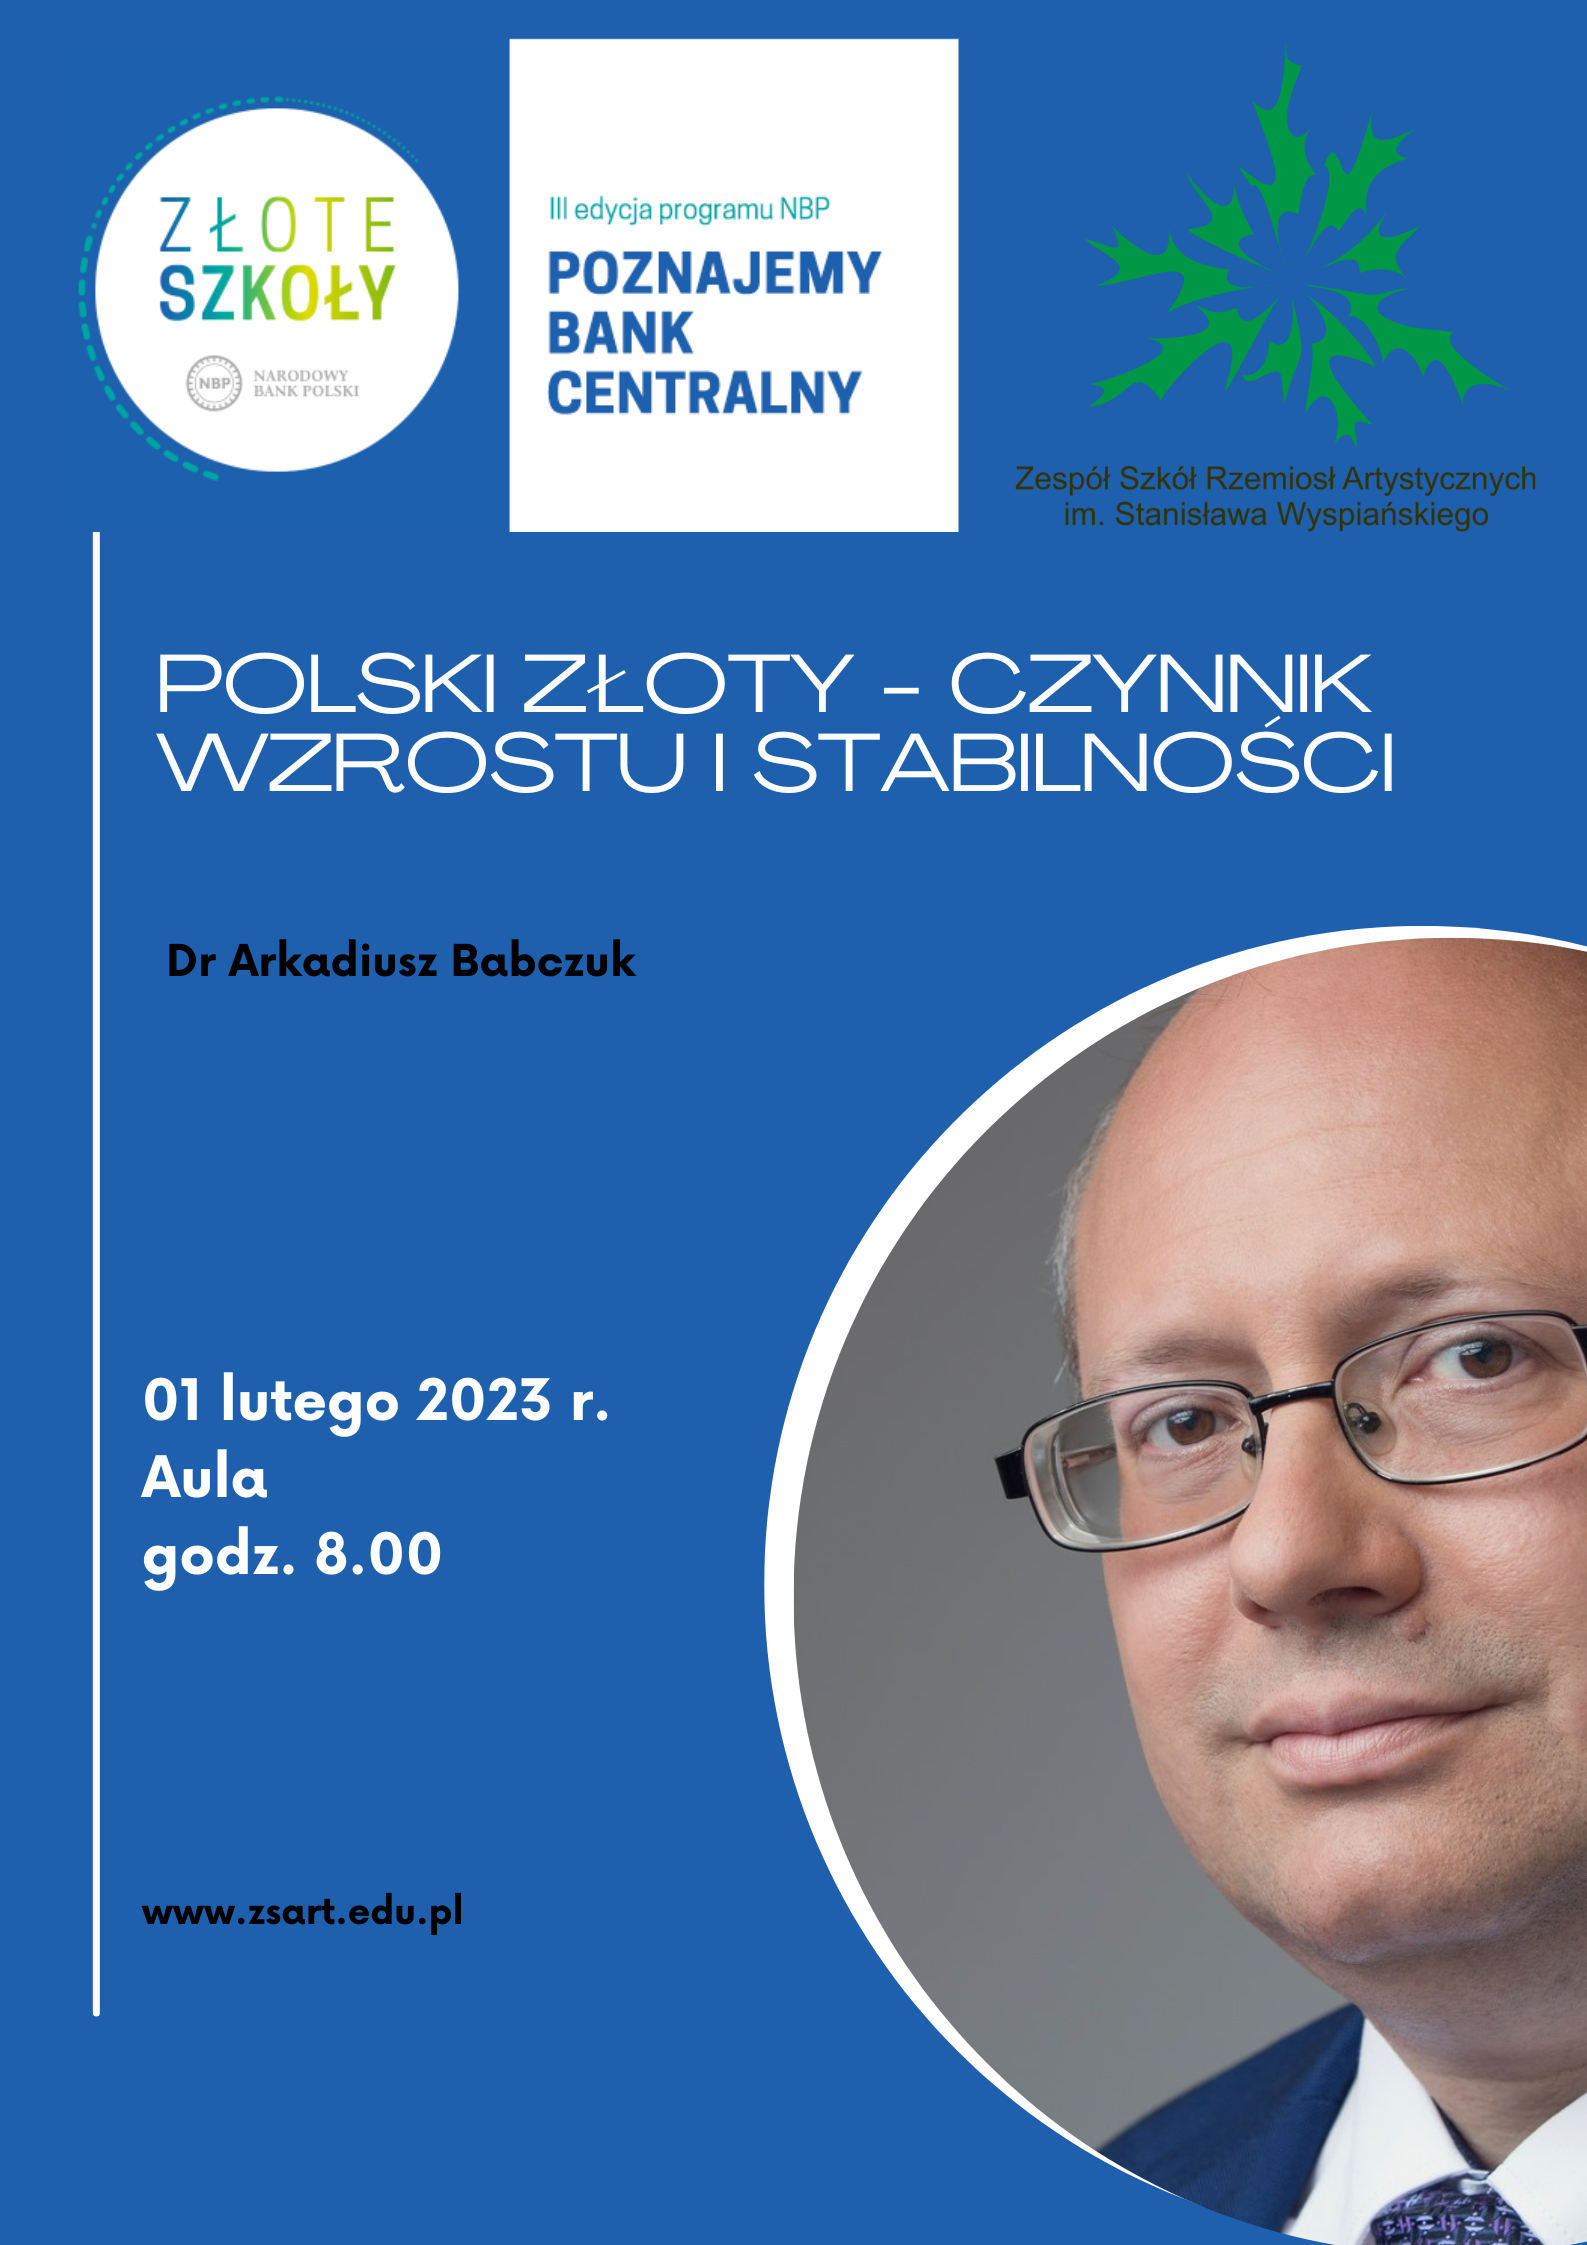 Polski złoty - czynnik wzrostu i stabilności